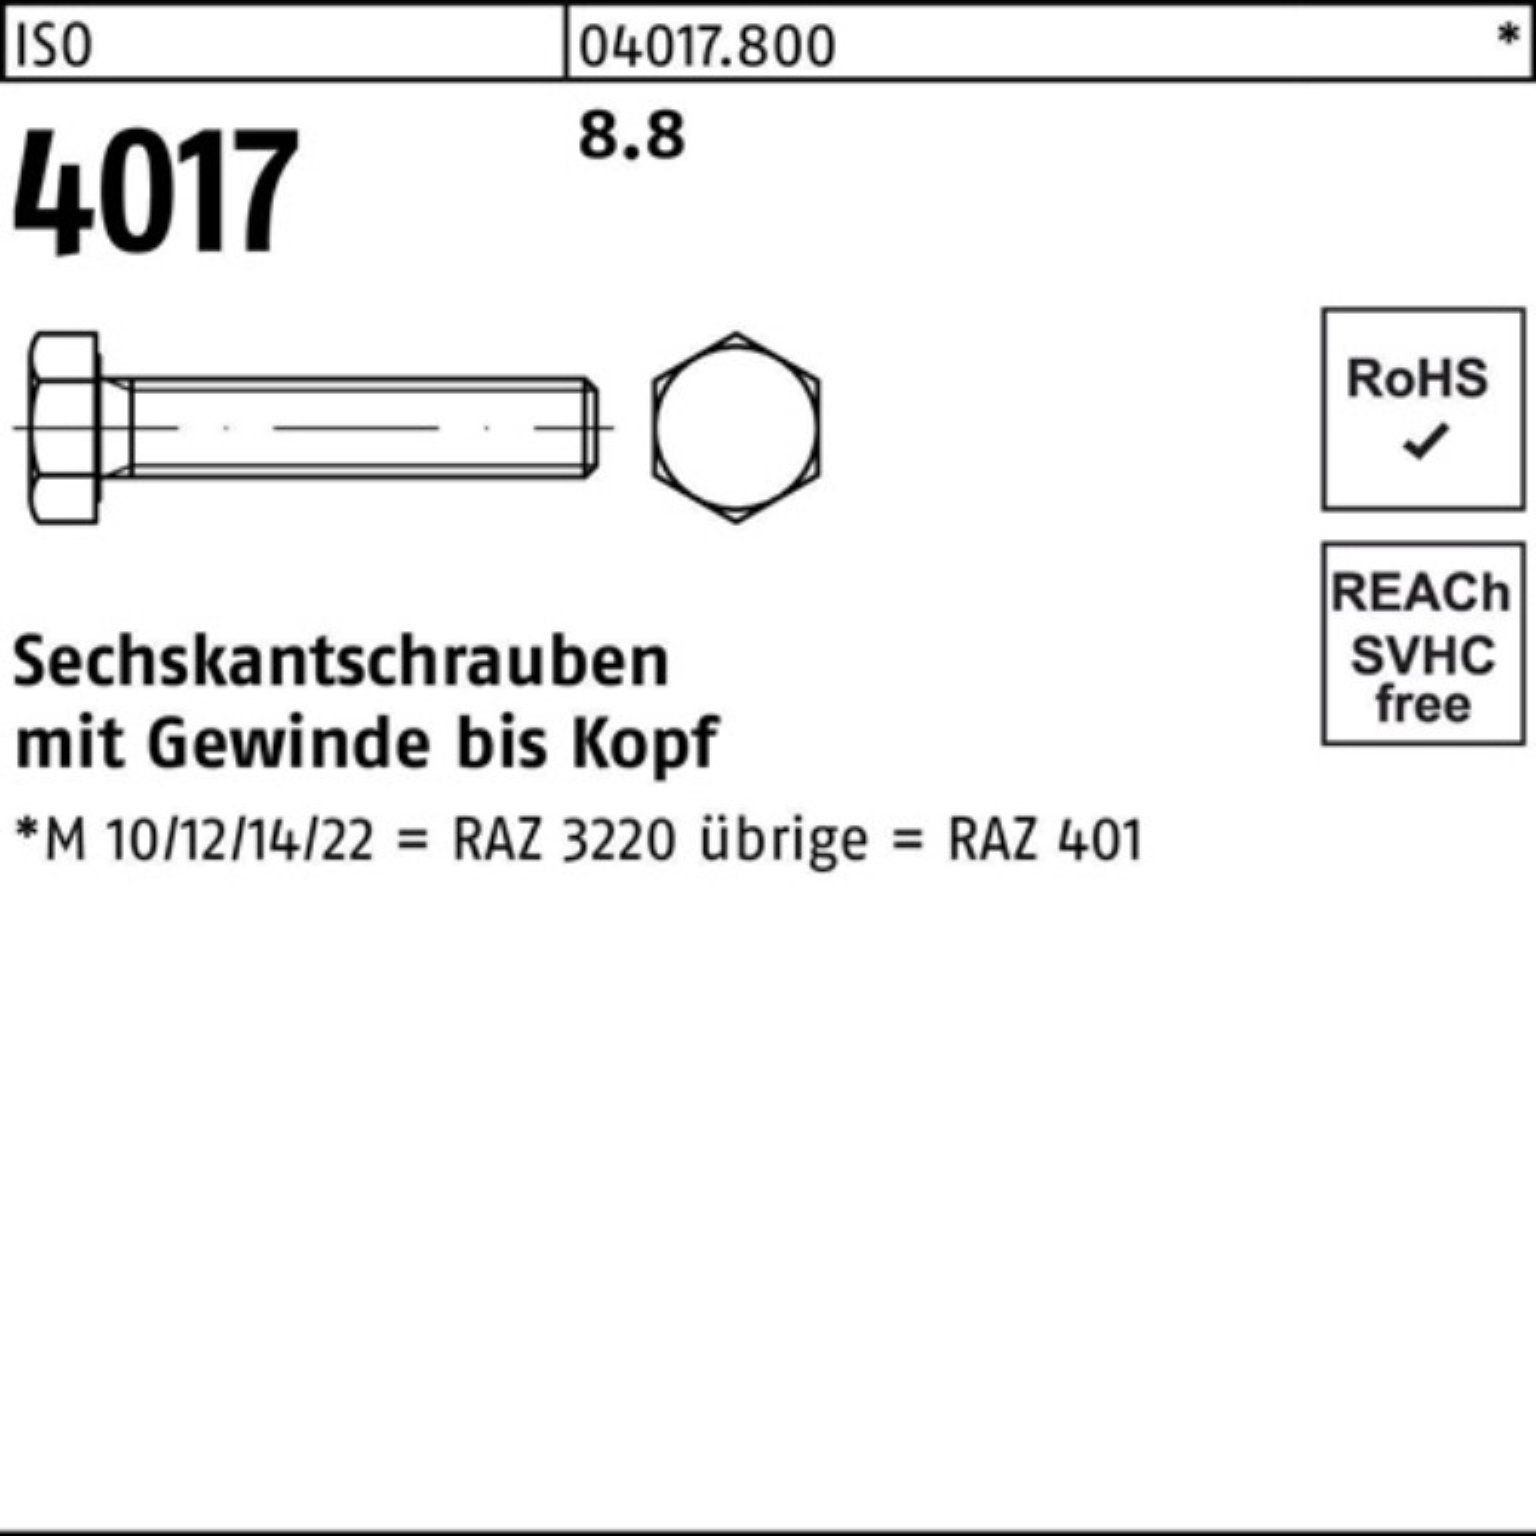 Bufab Sechskantschraube Pack M24x 100er VG ISO Sechskantschraube ISO 401 8.8 Stück 4017 1 170